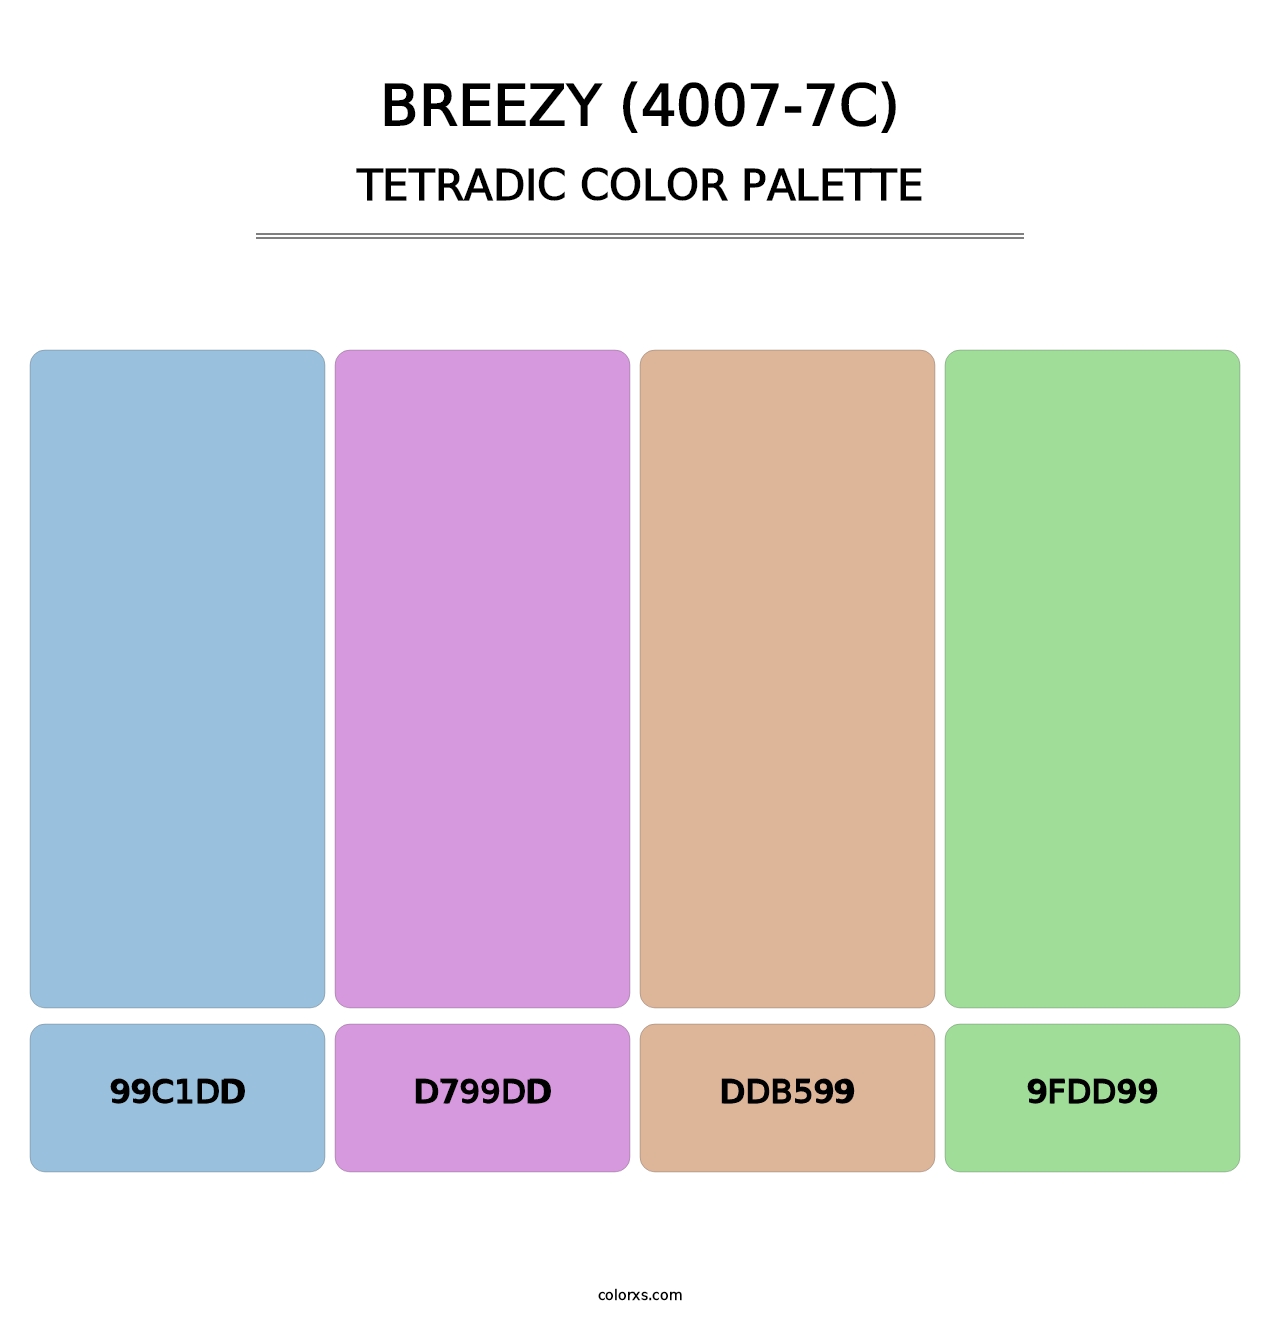 Breezy (4007-7C) - Tetradic Color Palette